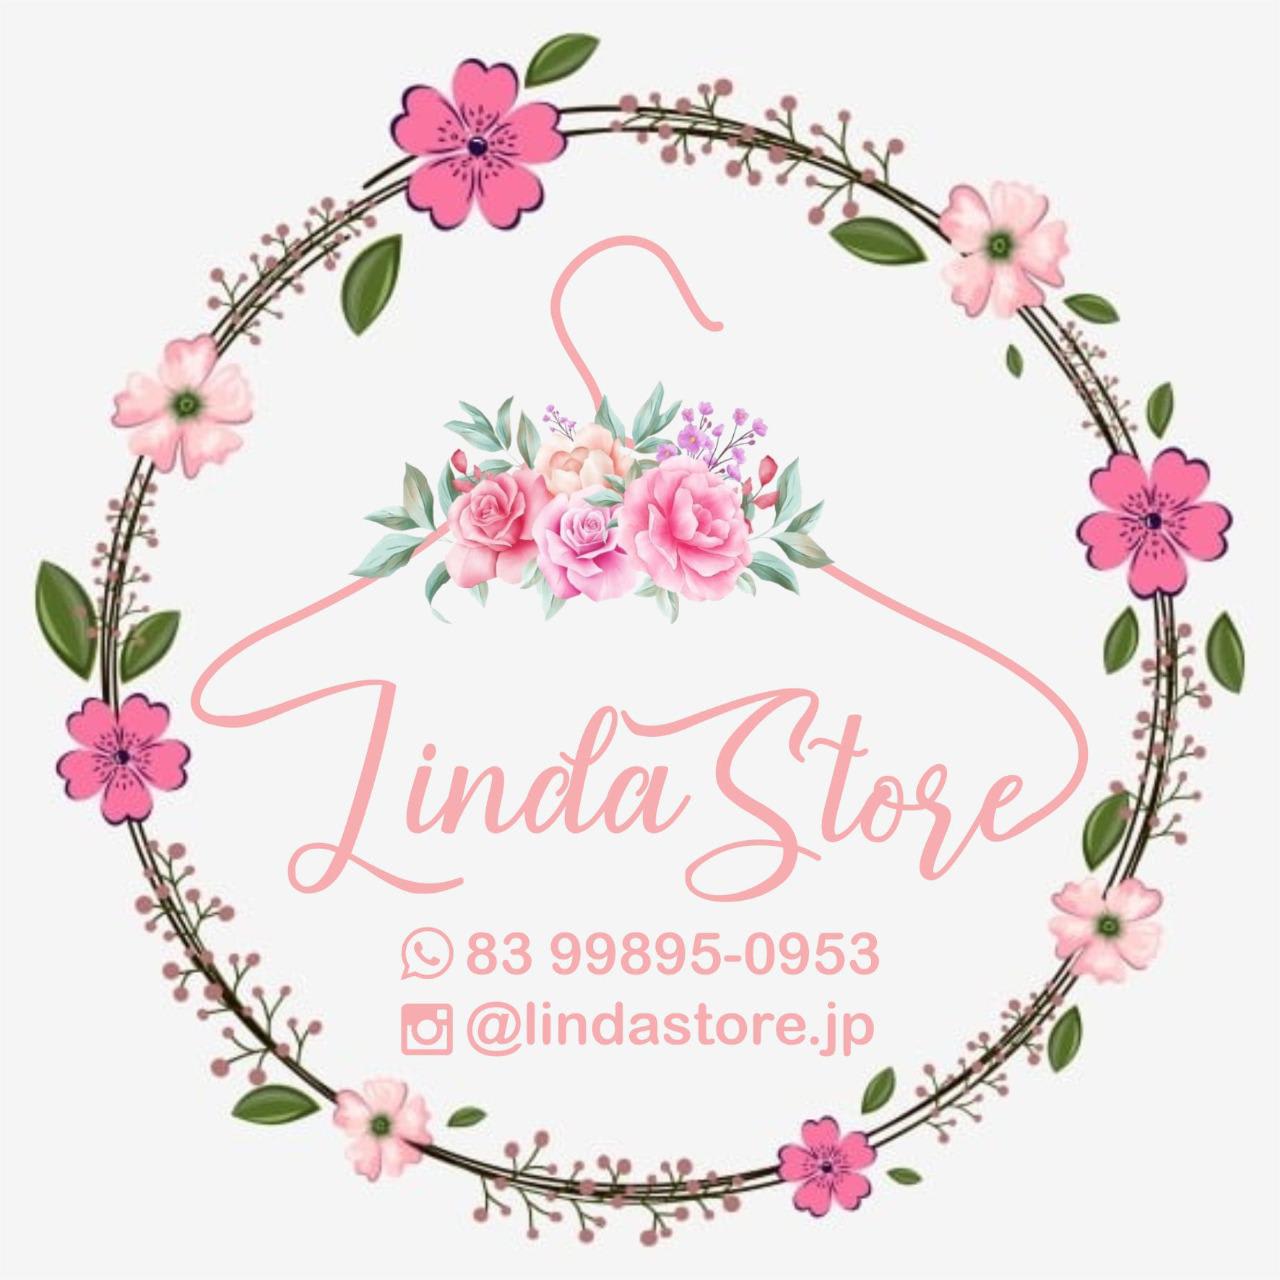 Linda Store